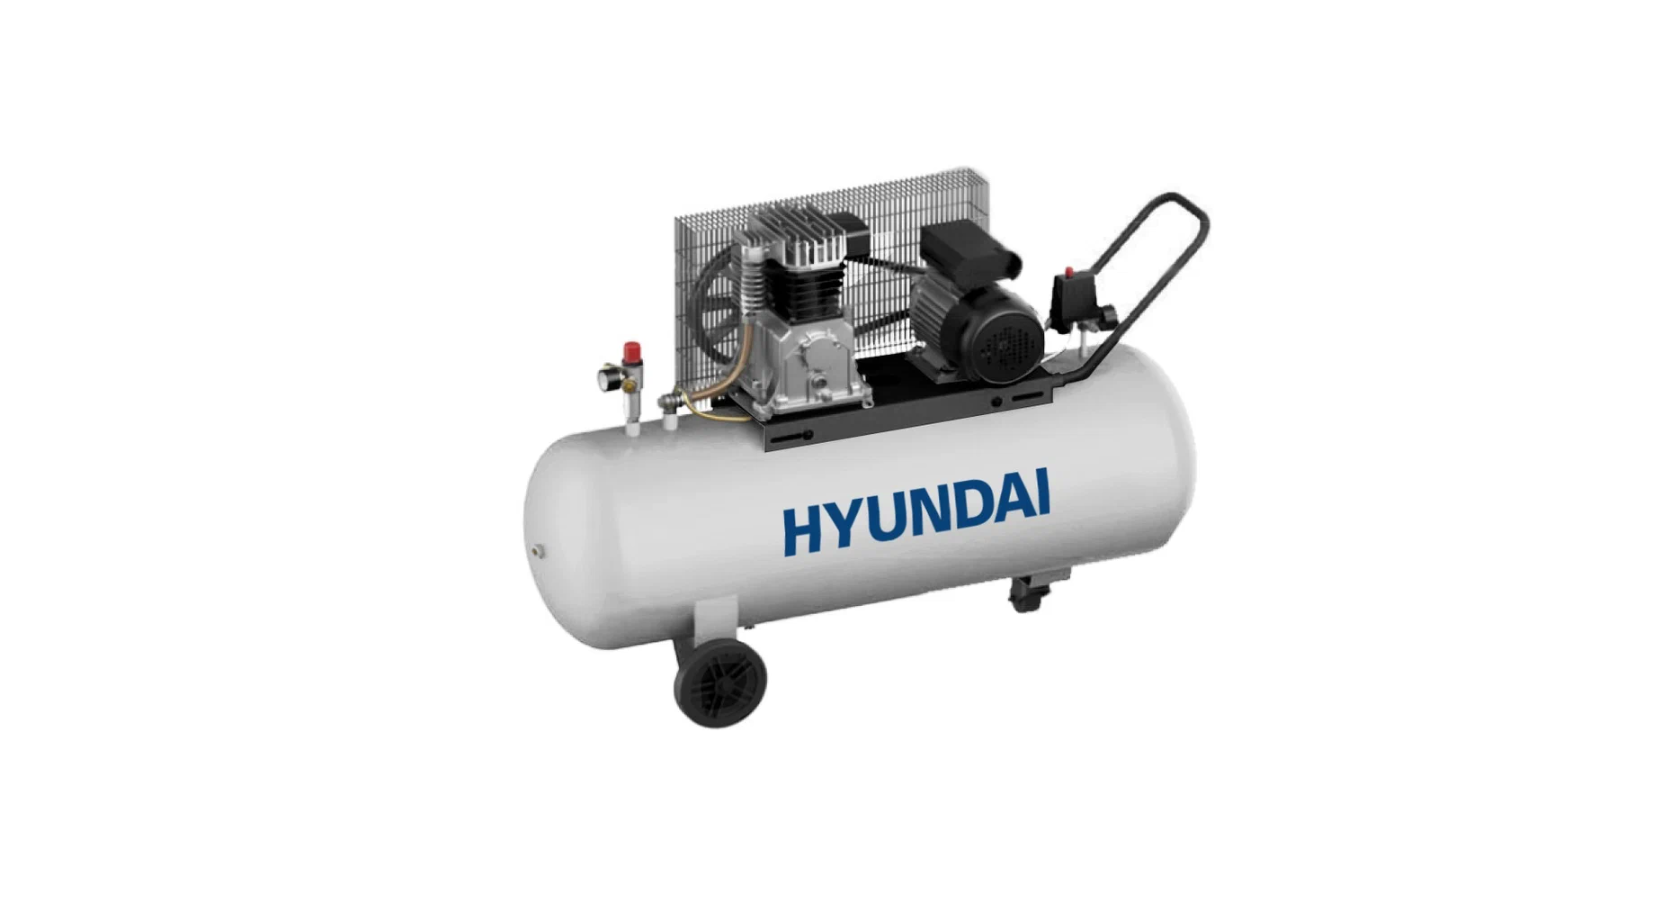 Воздушный компрессор Hyundai масляный HYC 40200-3BD компрессор воздушный для аэрографа fengda as 196 мини компрессор